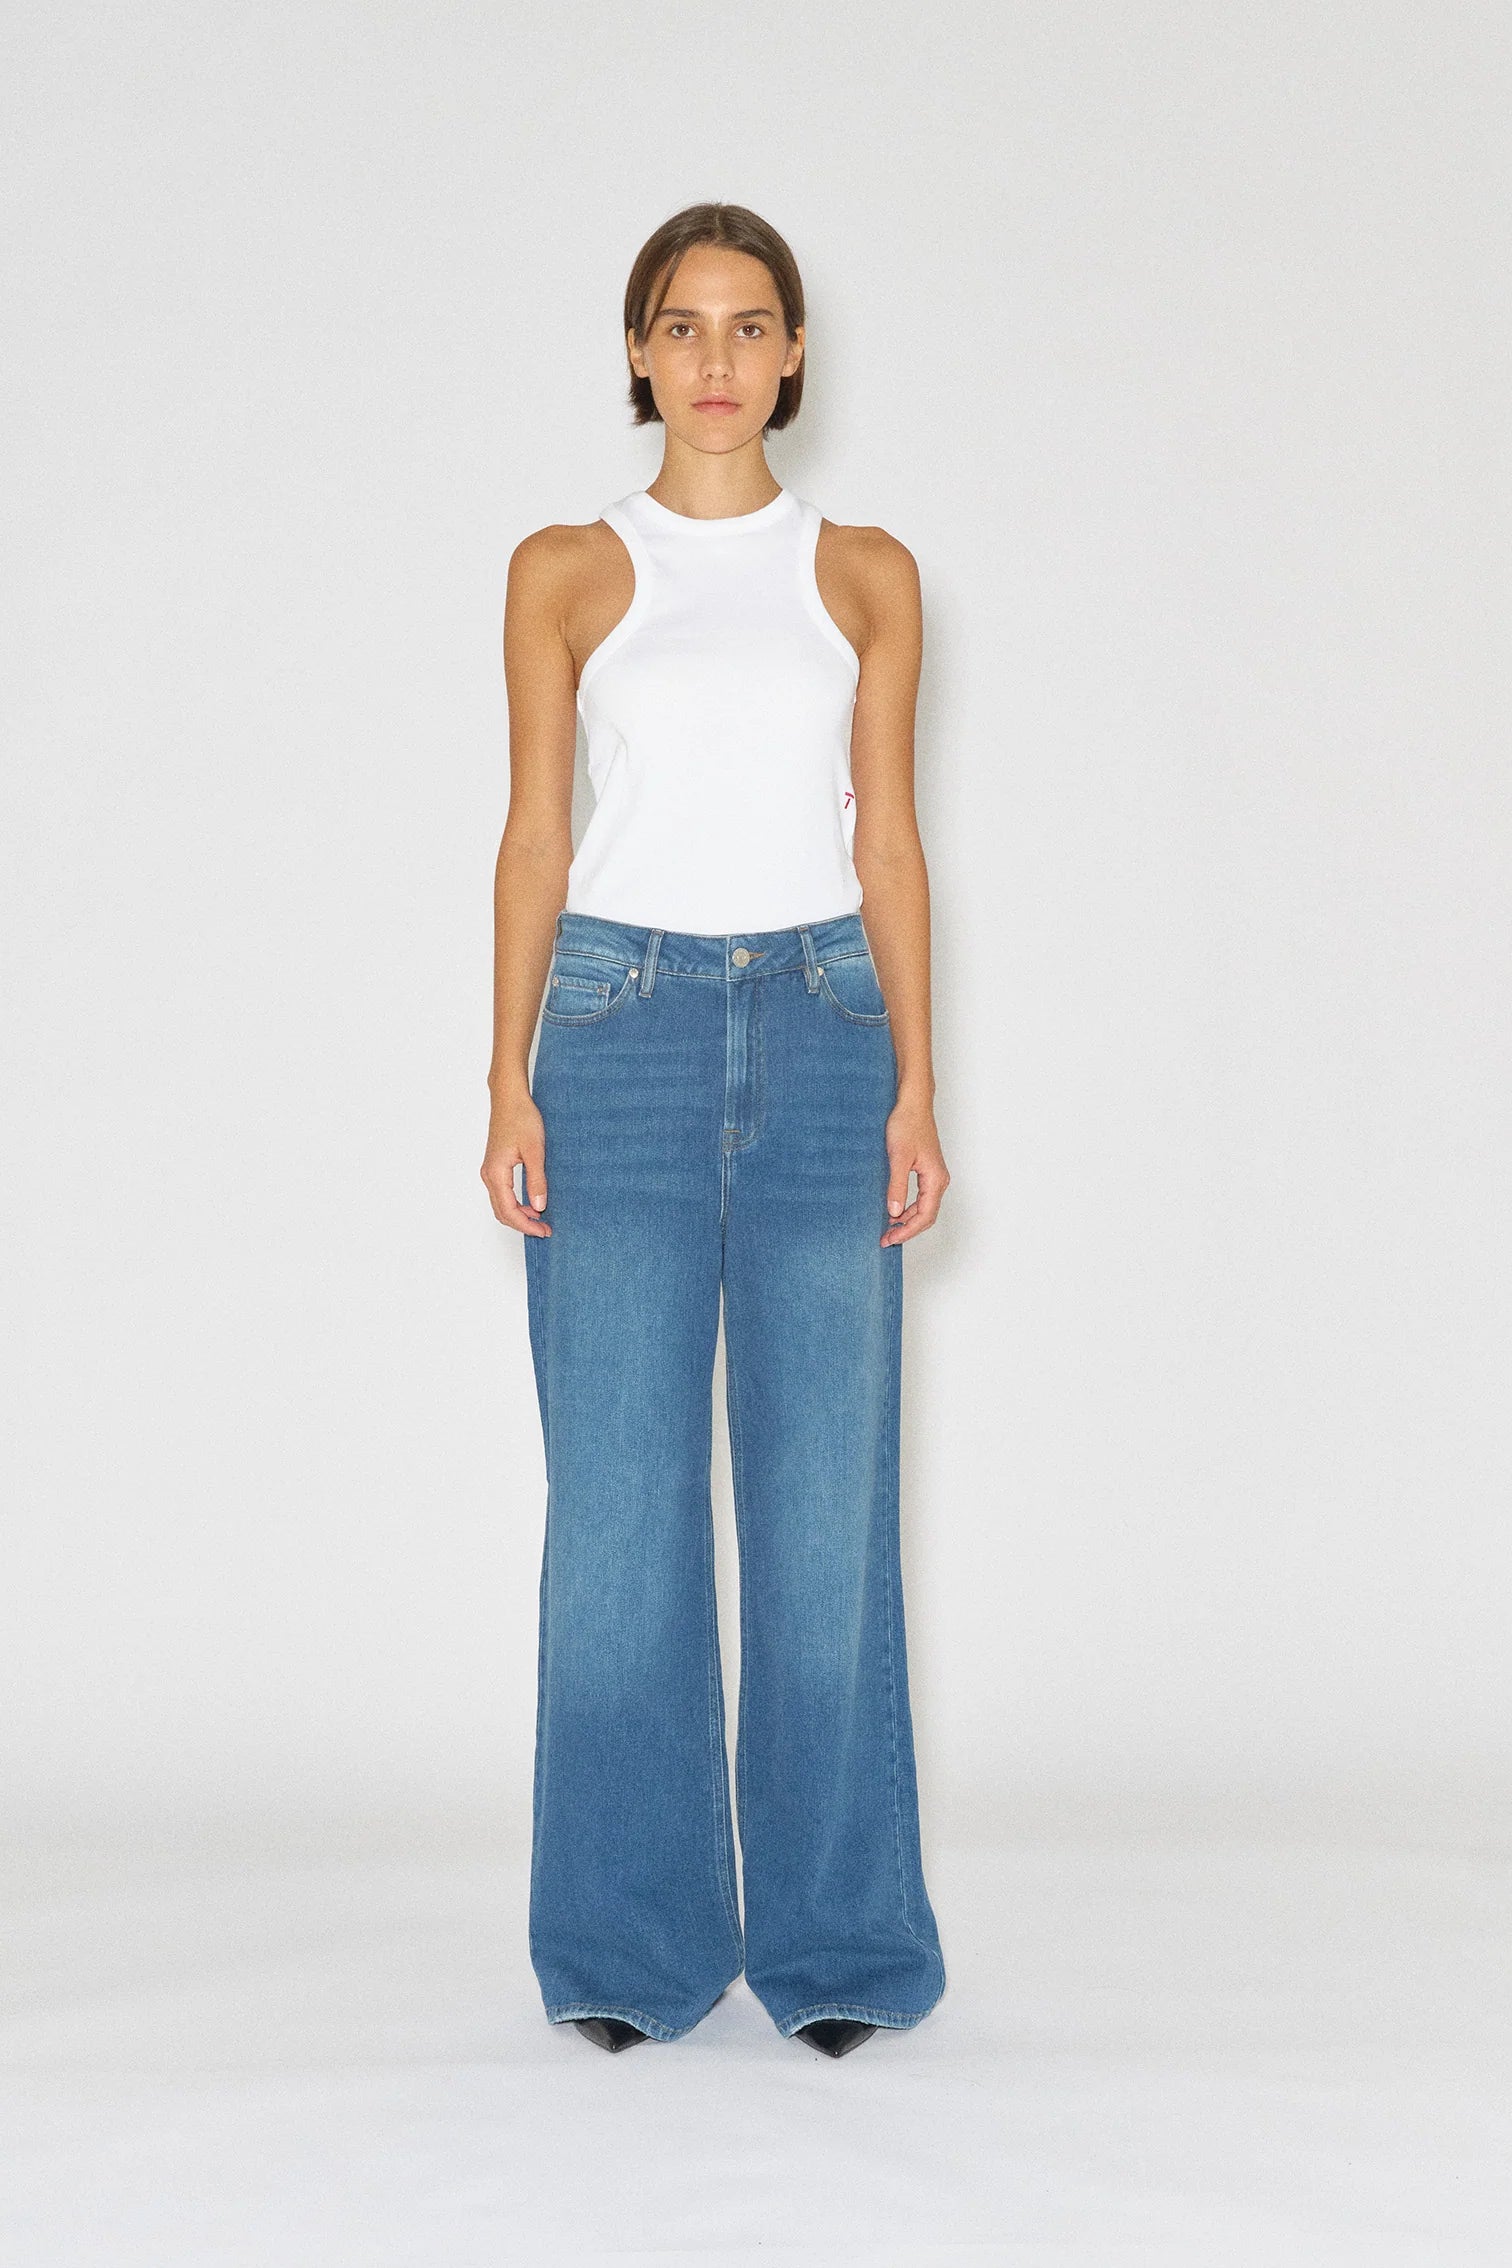 Model wears wide, straight leg jeans in mid blue